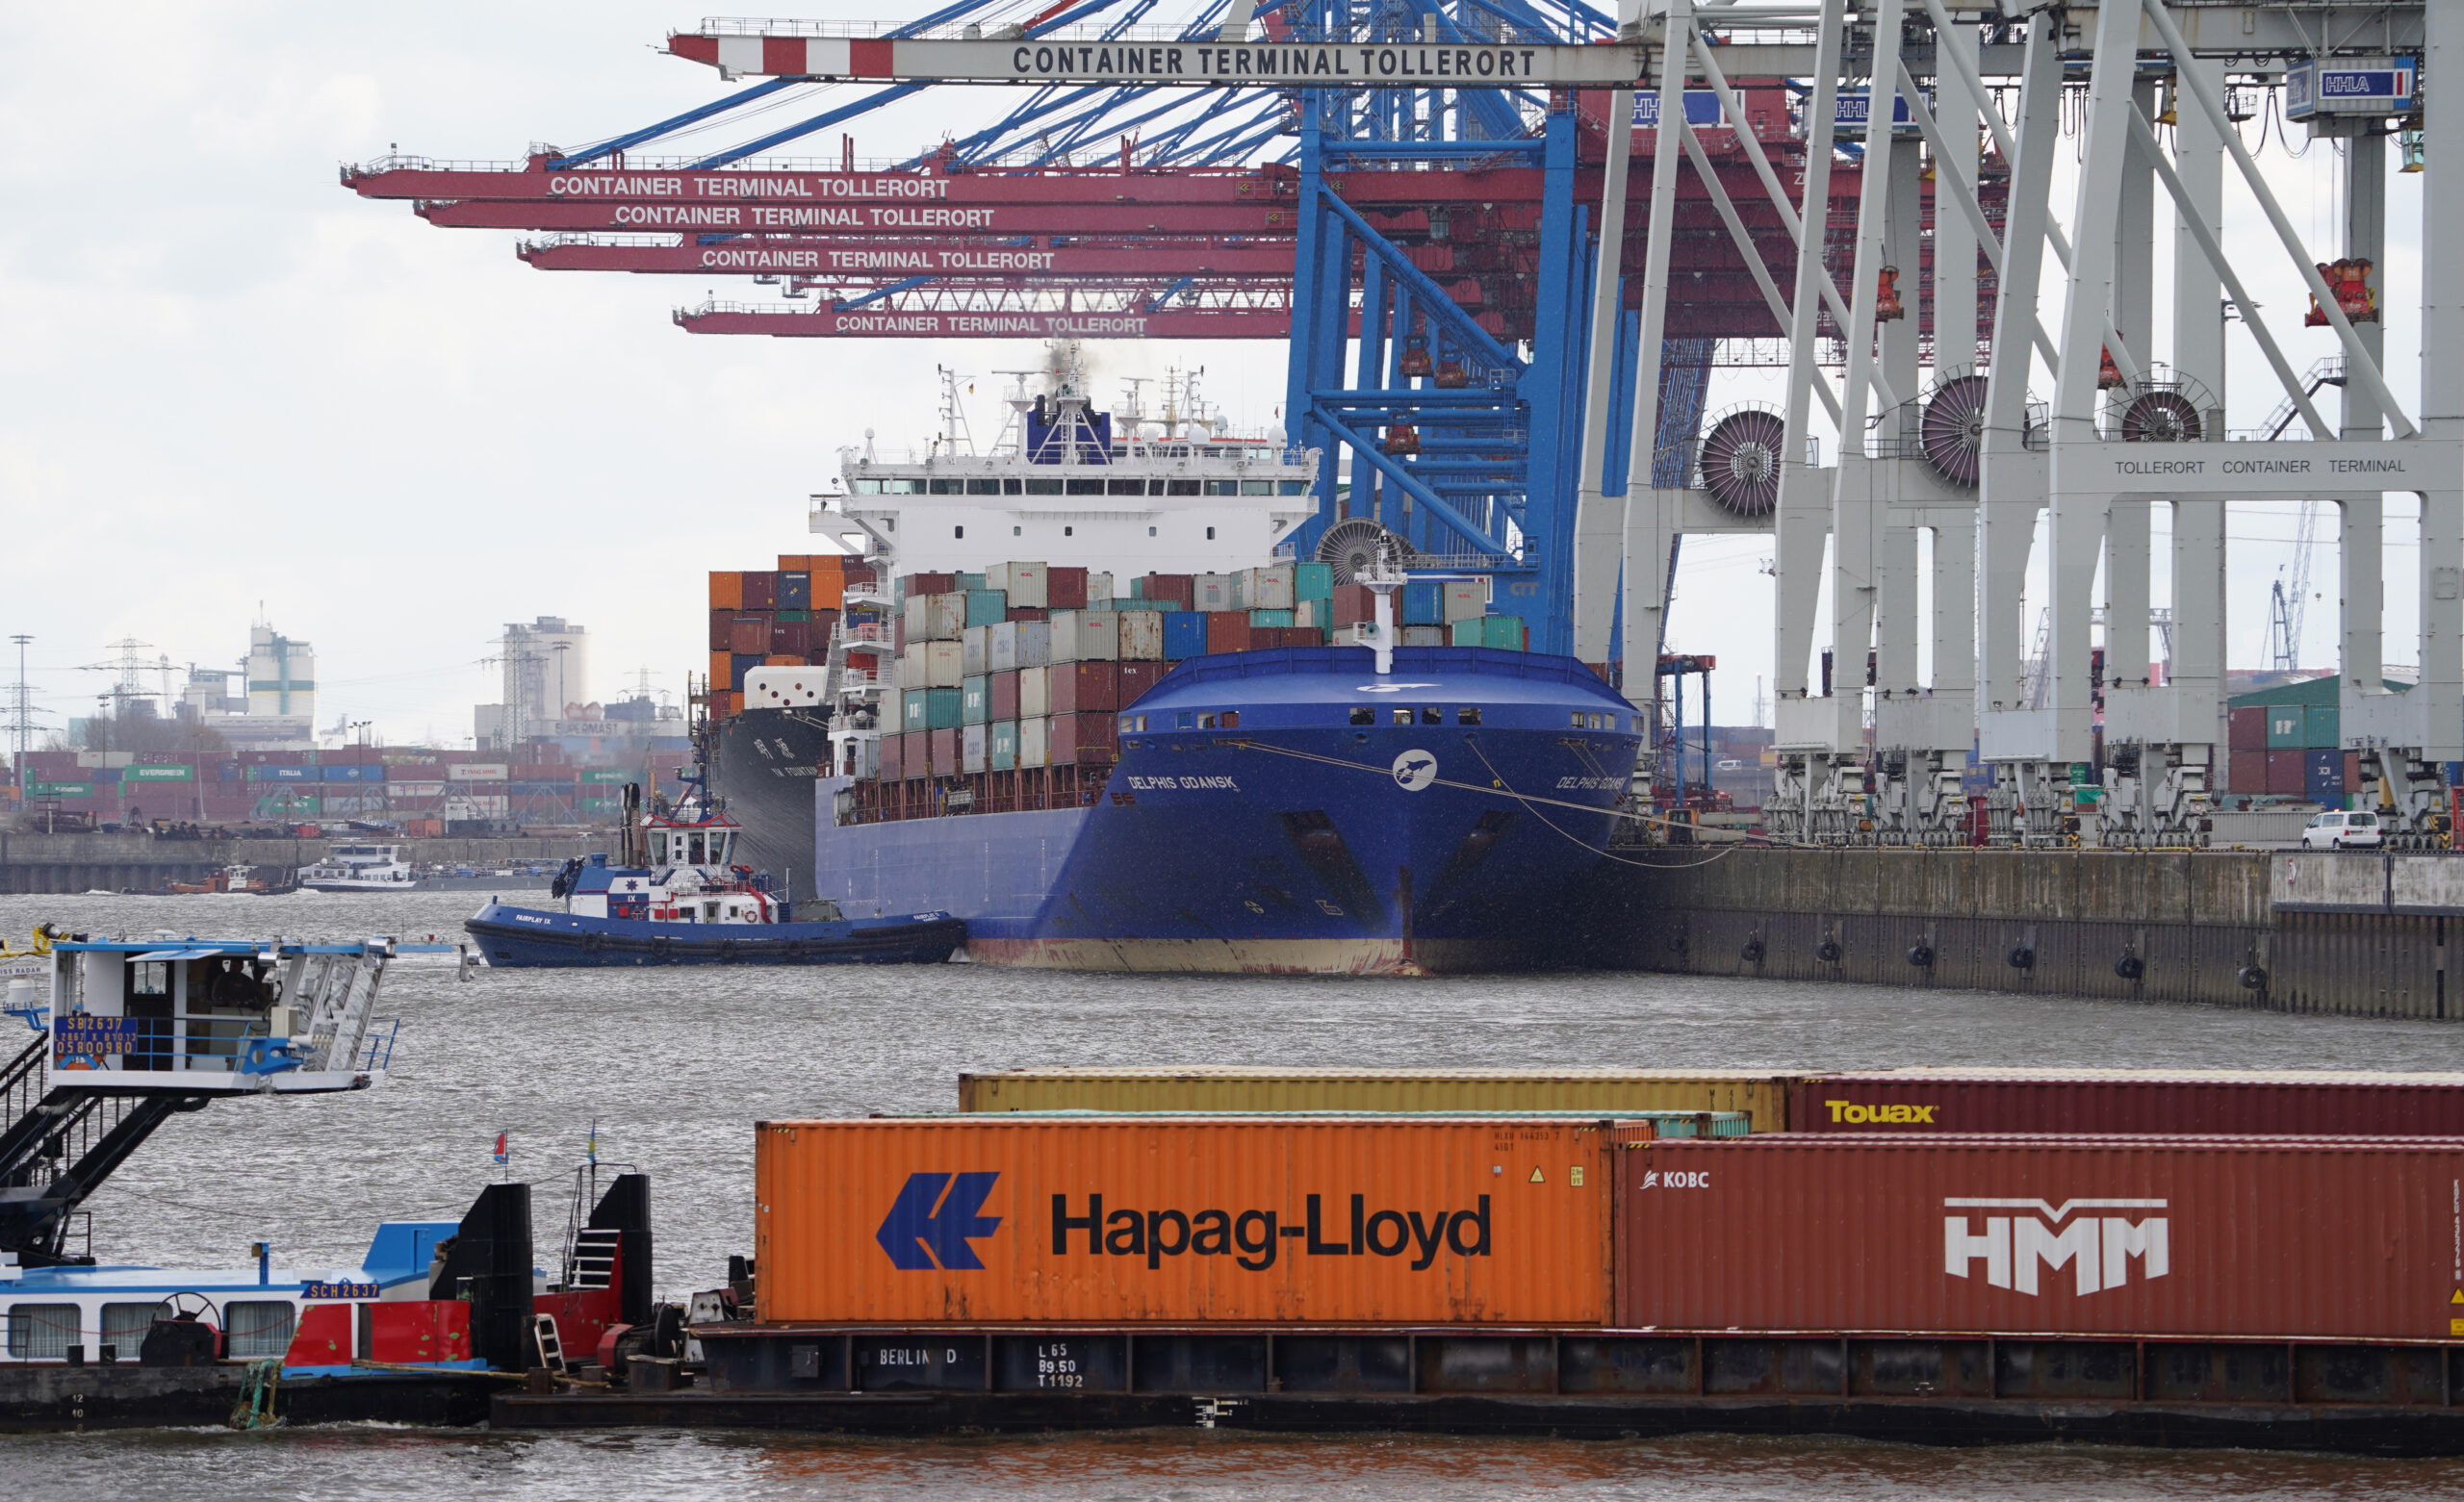 Ein Schiff fährt auf der Elbe im Hamburger Hafen am Containerterminal Tollerort: Die Bundesregierung will ein Veto gegen den Deal mit dem chinesischen Staatsunternehmen Cosco aussprechen. (Symbolbild)